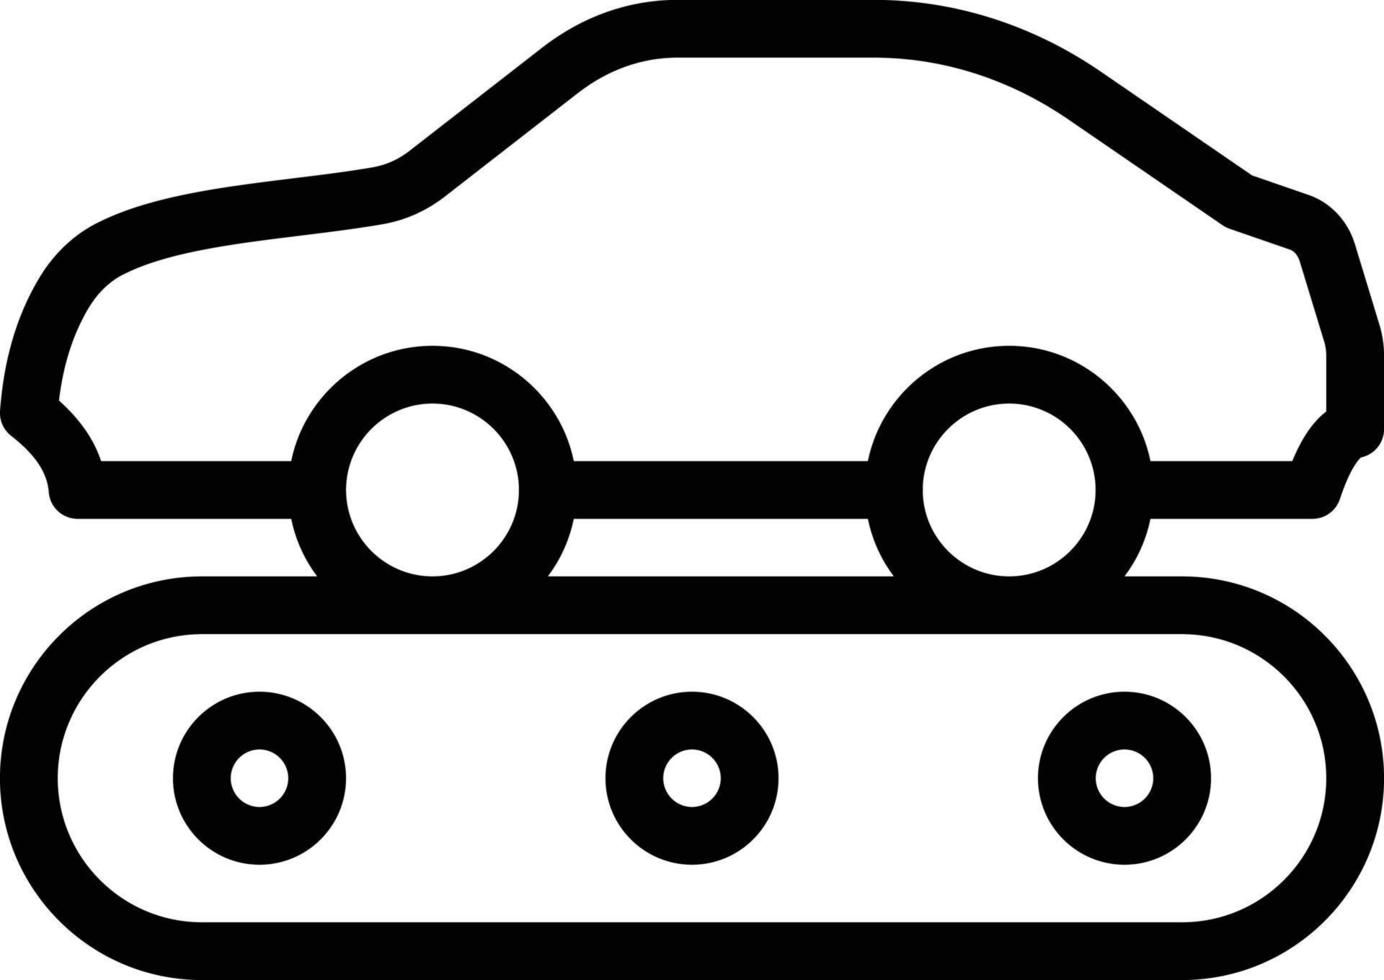 biltransportör vektor illustration på en bakgrund. premium kvalitet symbols.vector ikoner för koncept och grafisk design.